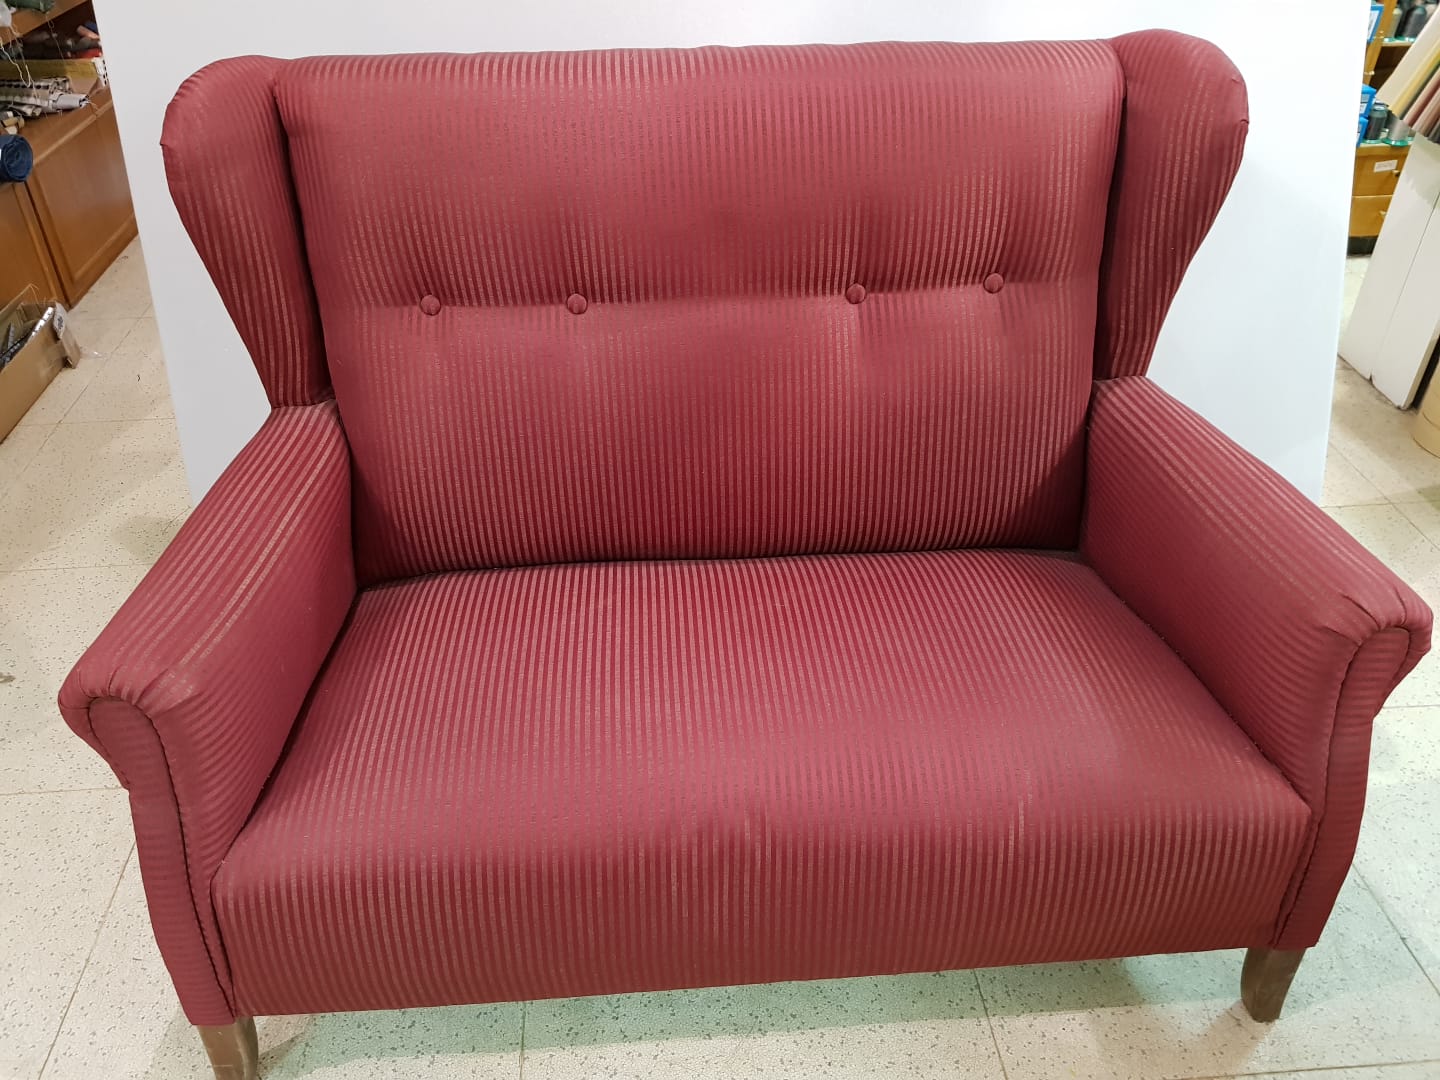 Čalouněný stylový sedací nábytek - renovace, prodej, výkup